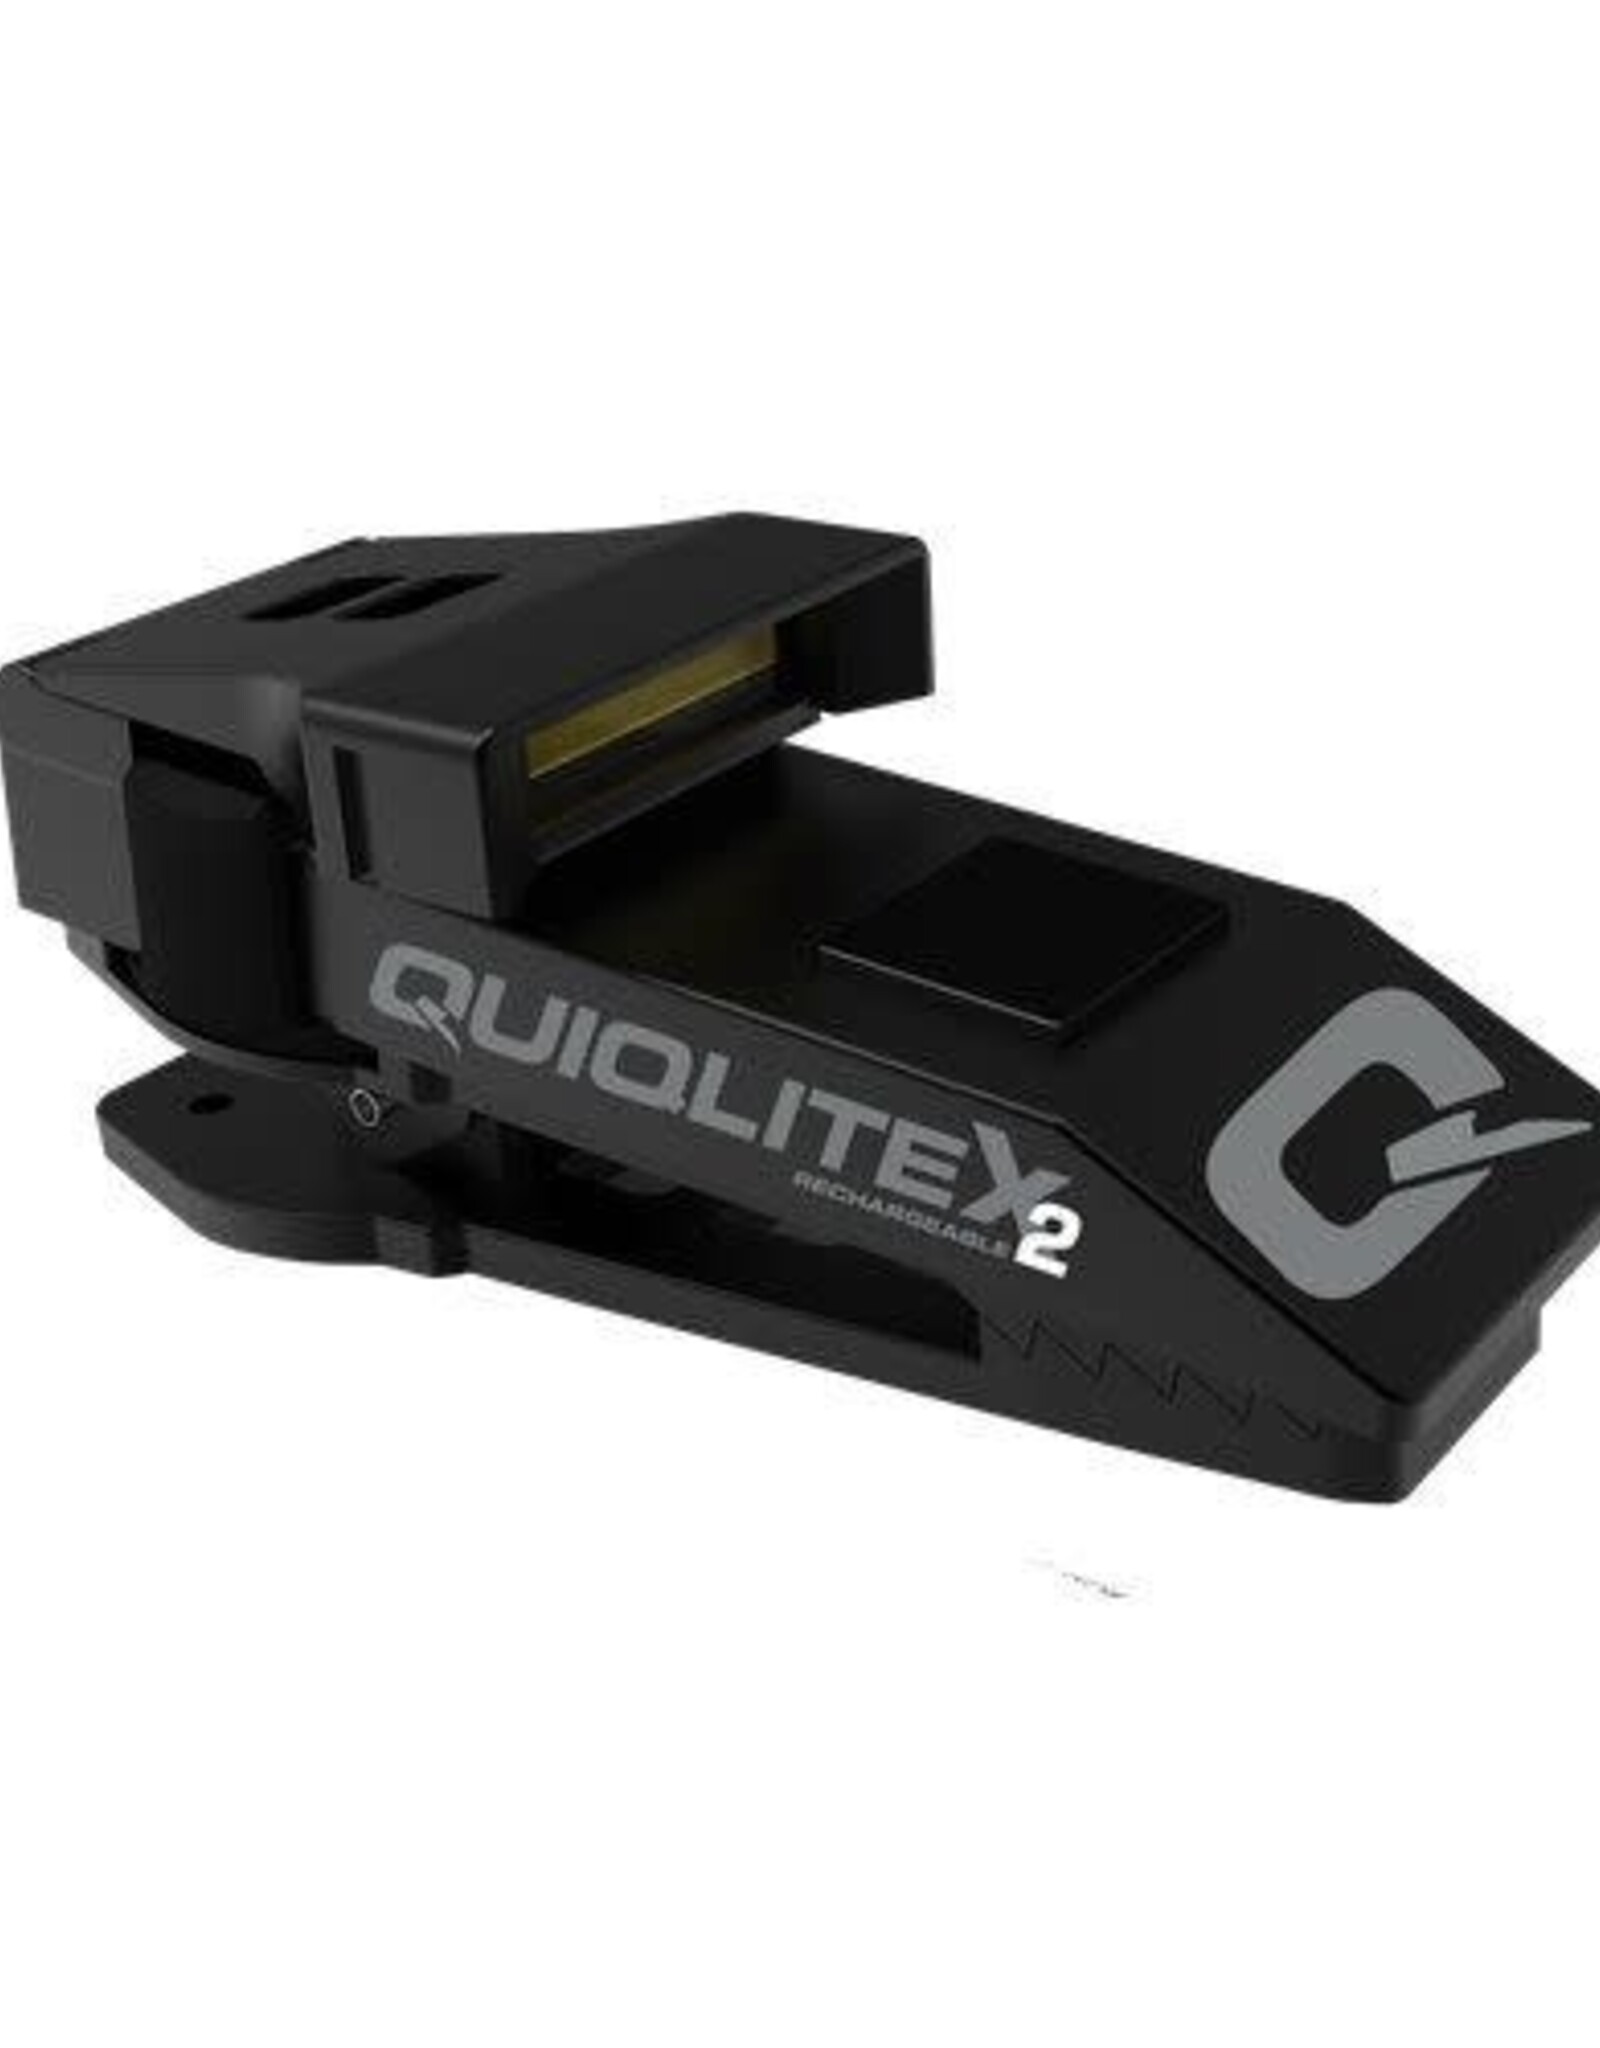 Quiqlite QX2 RECHARGEABLE   LED